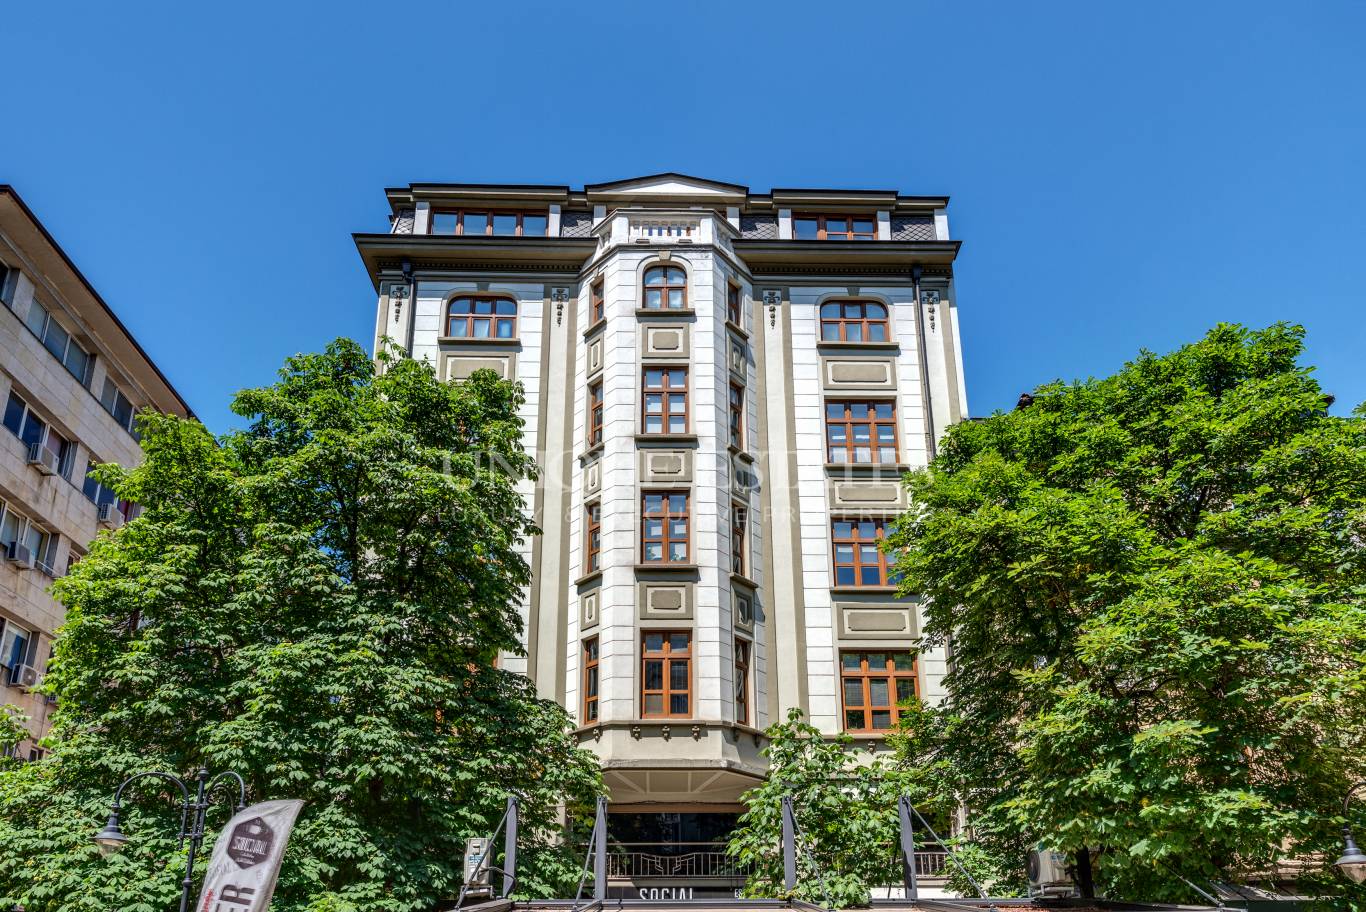 Офис под наем в София, Център - код на имота: K16022 - image 4